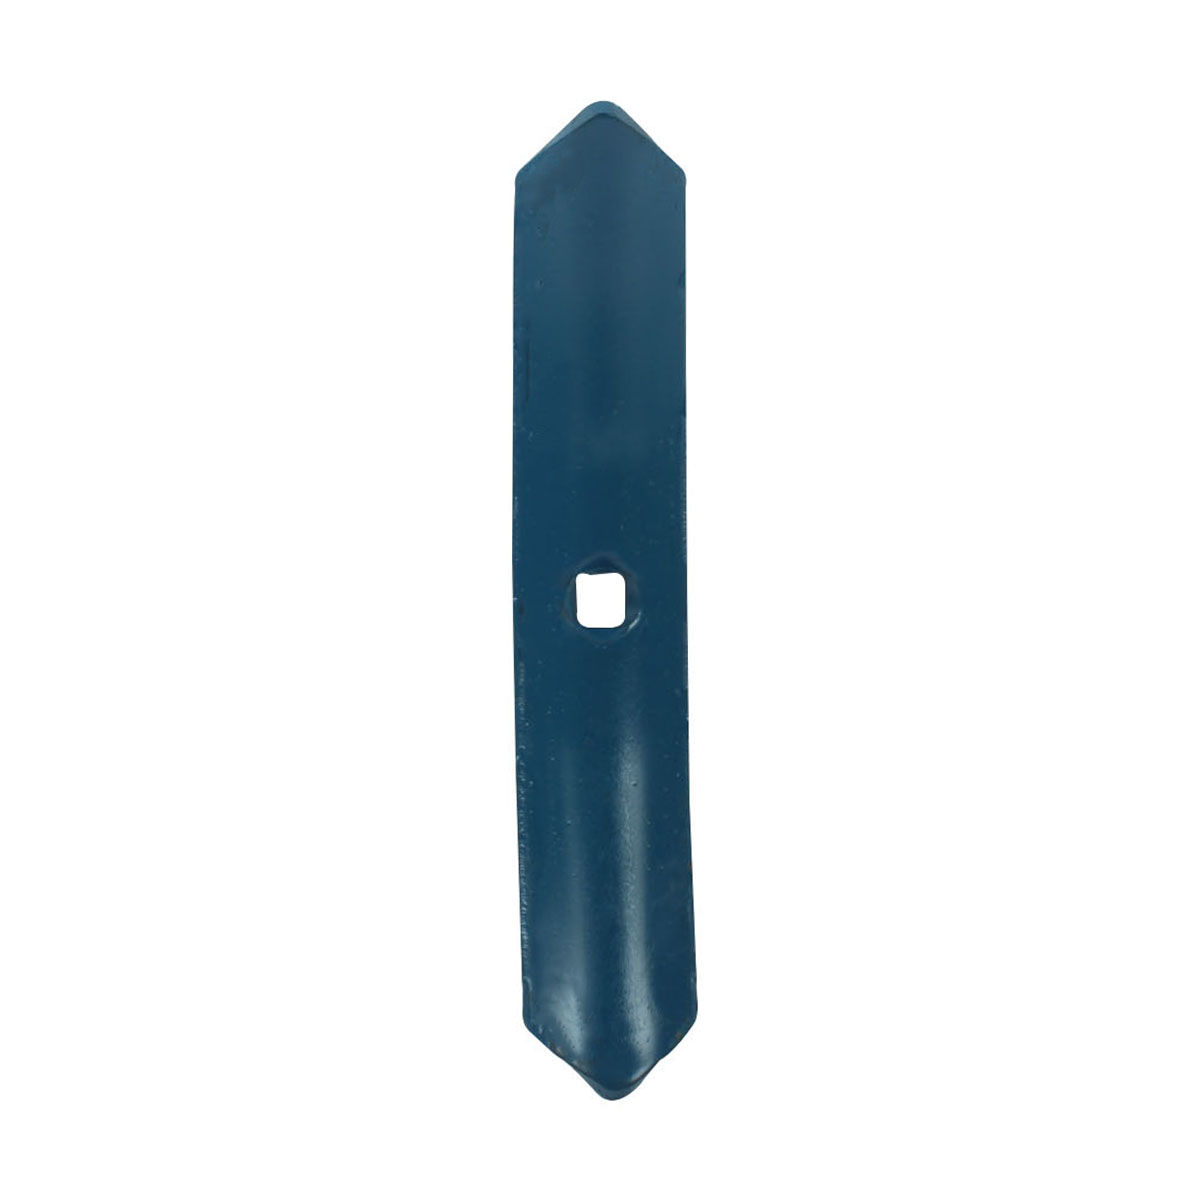 Soc de vibroculteur bleu, 40X6 mm, universel, longueur 210 mm, 01000527 - 7701043, pièce interchangeable, réversible